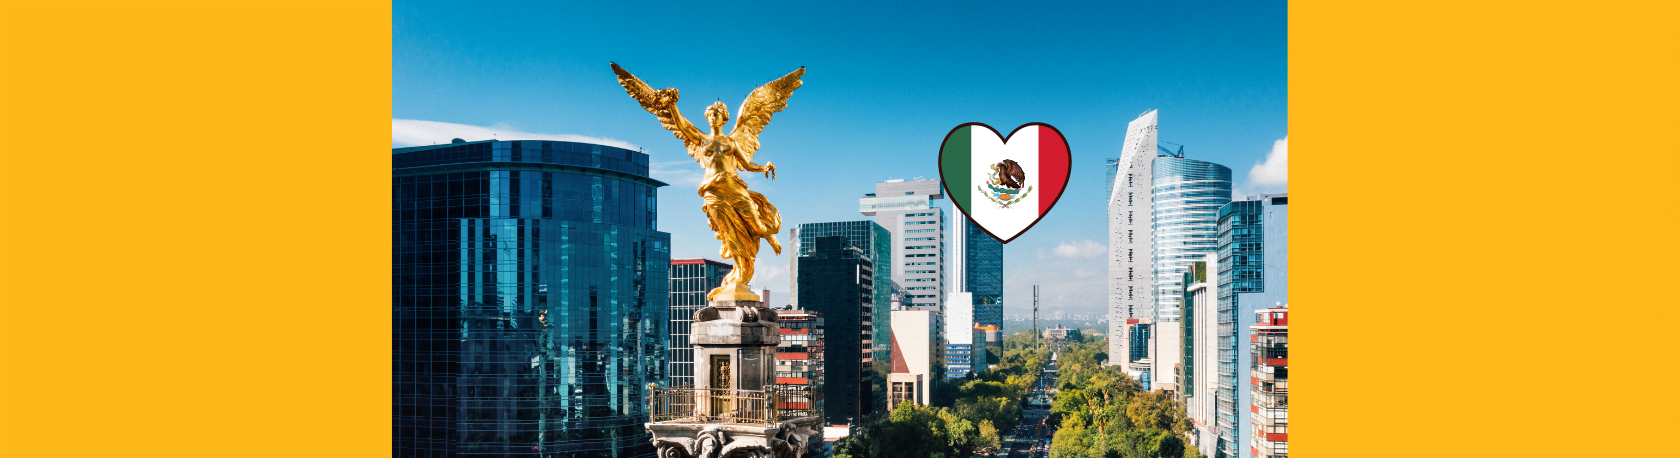 ¿Sabías que la Ciudad de Mexico fue construida sobre un lago? - Easy Español